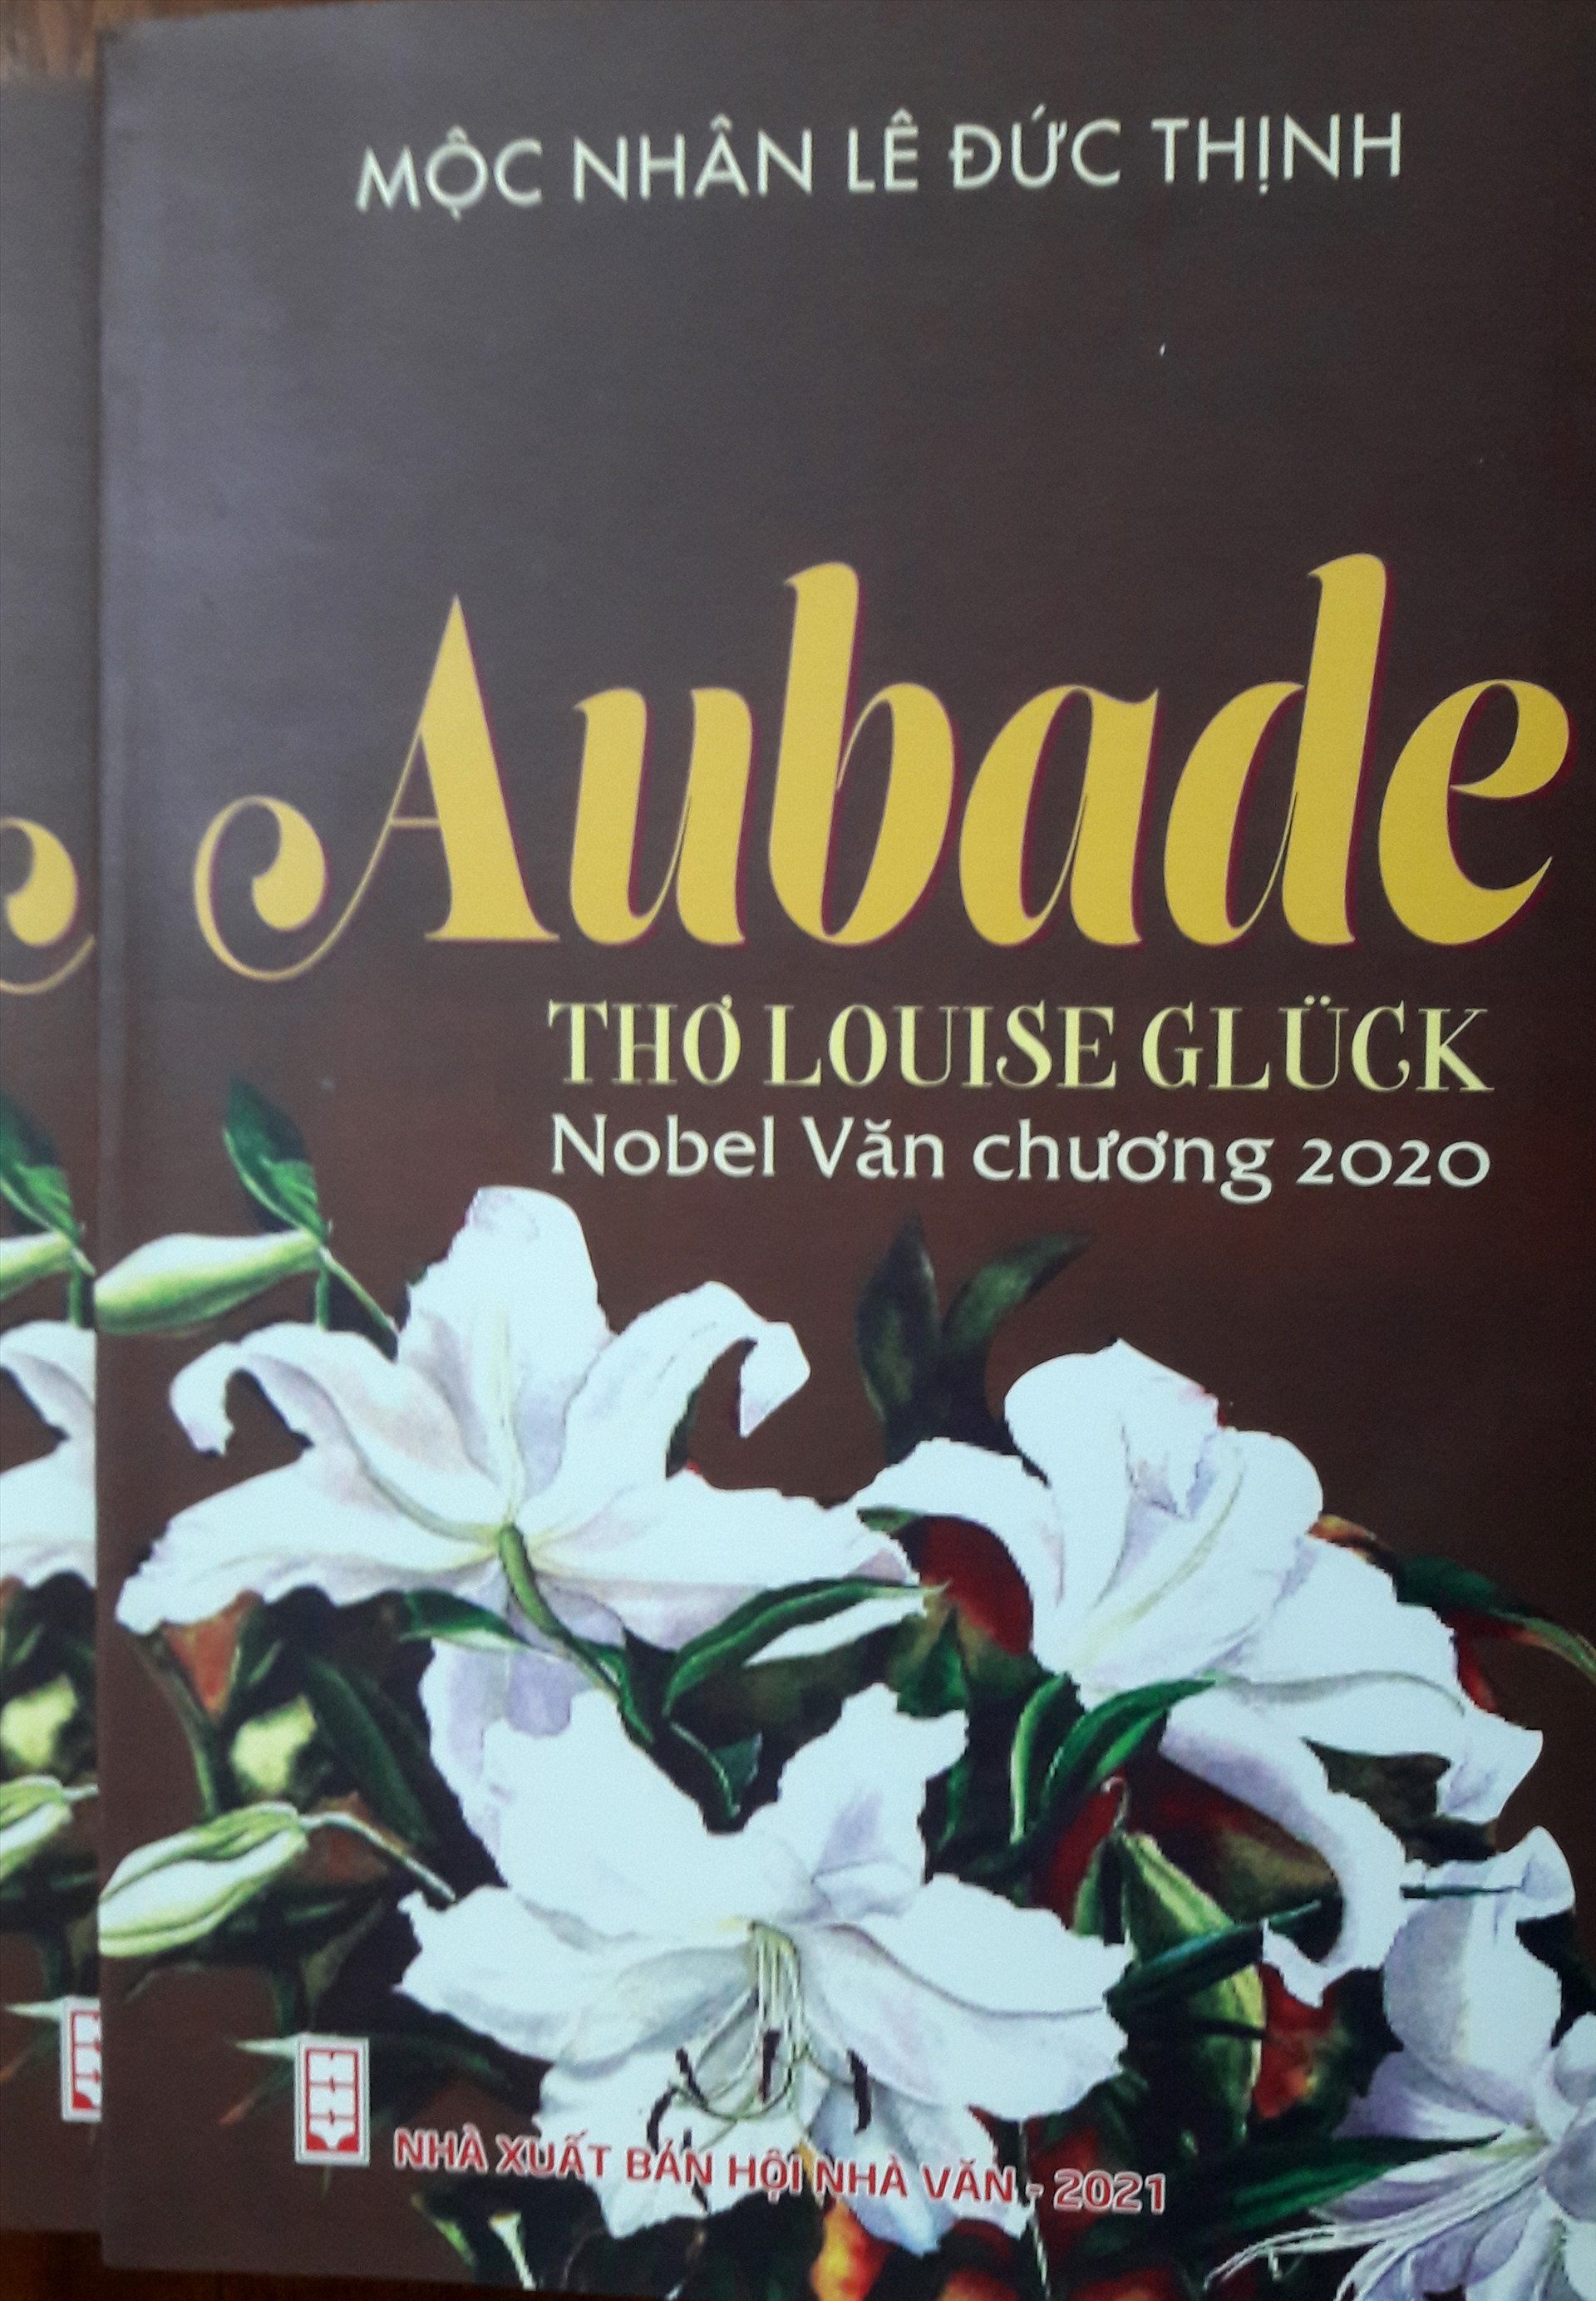 Bìa tập sách “AUBADE - Thơ Louise Glück - Nobel Văn chương 2020”.